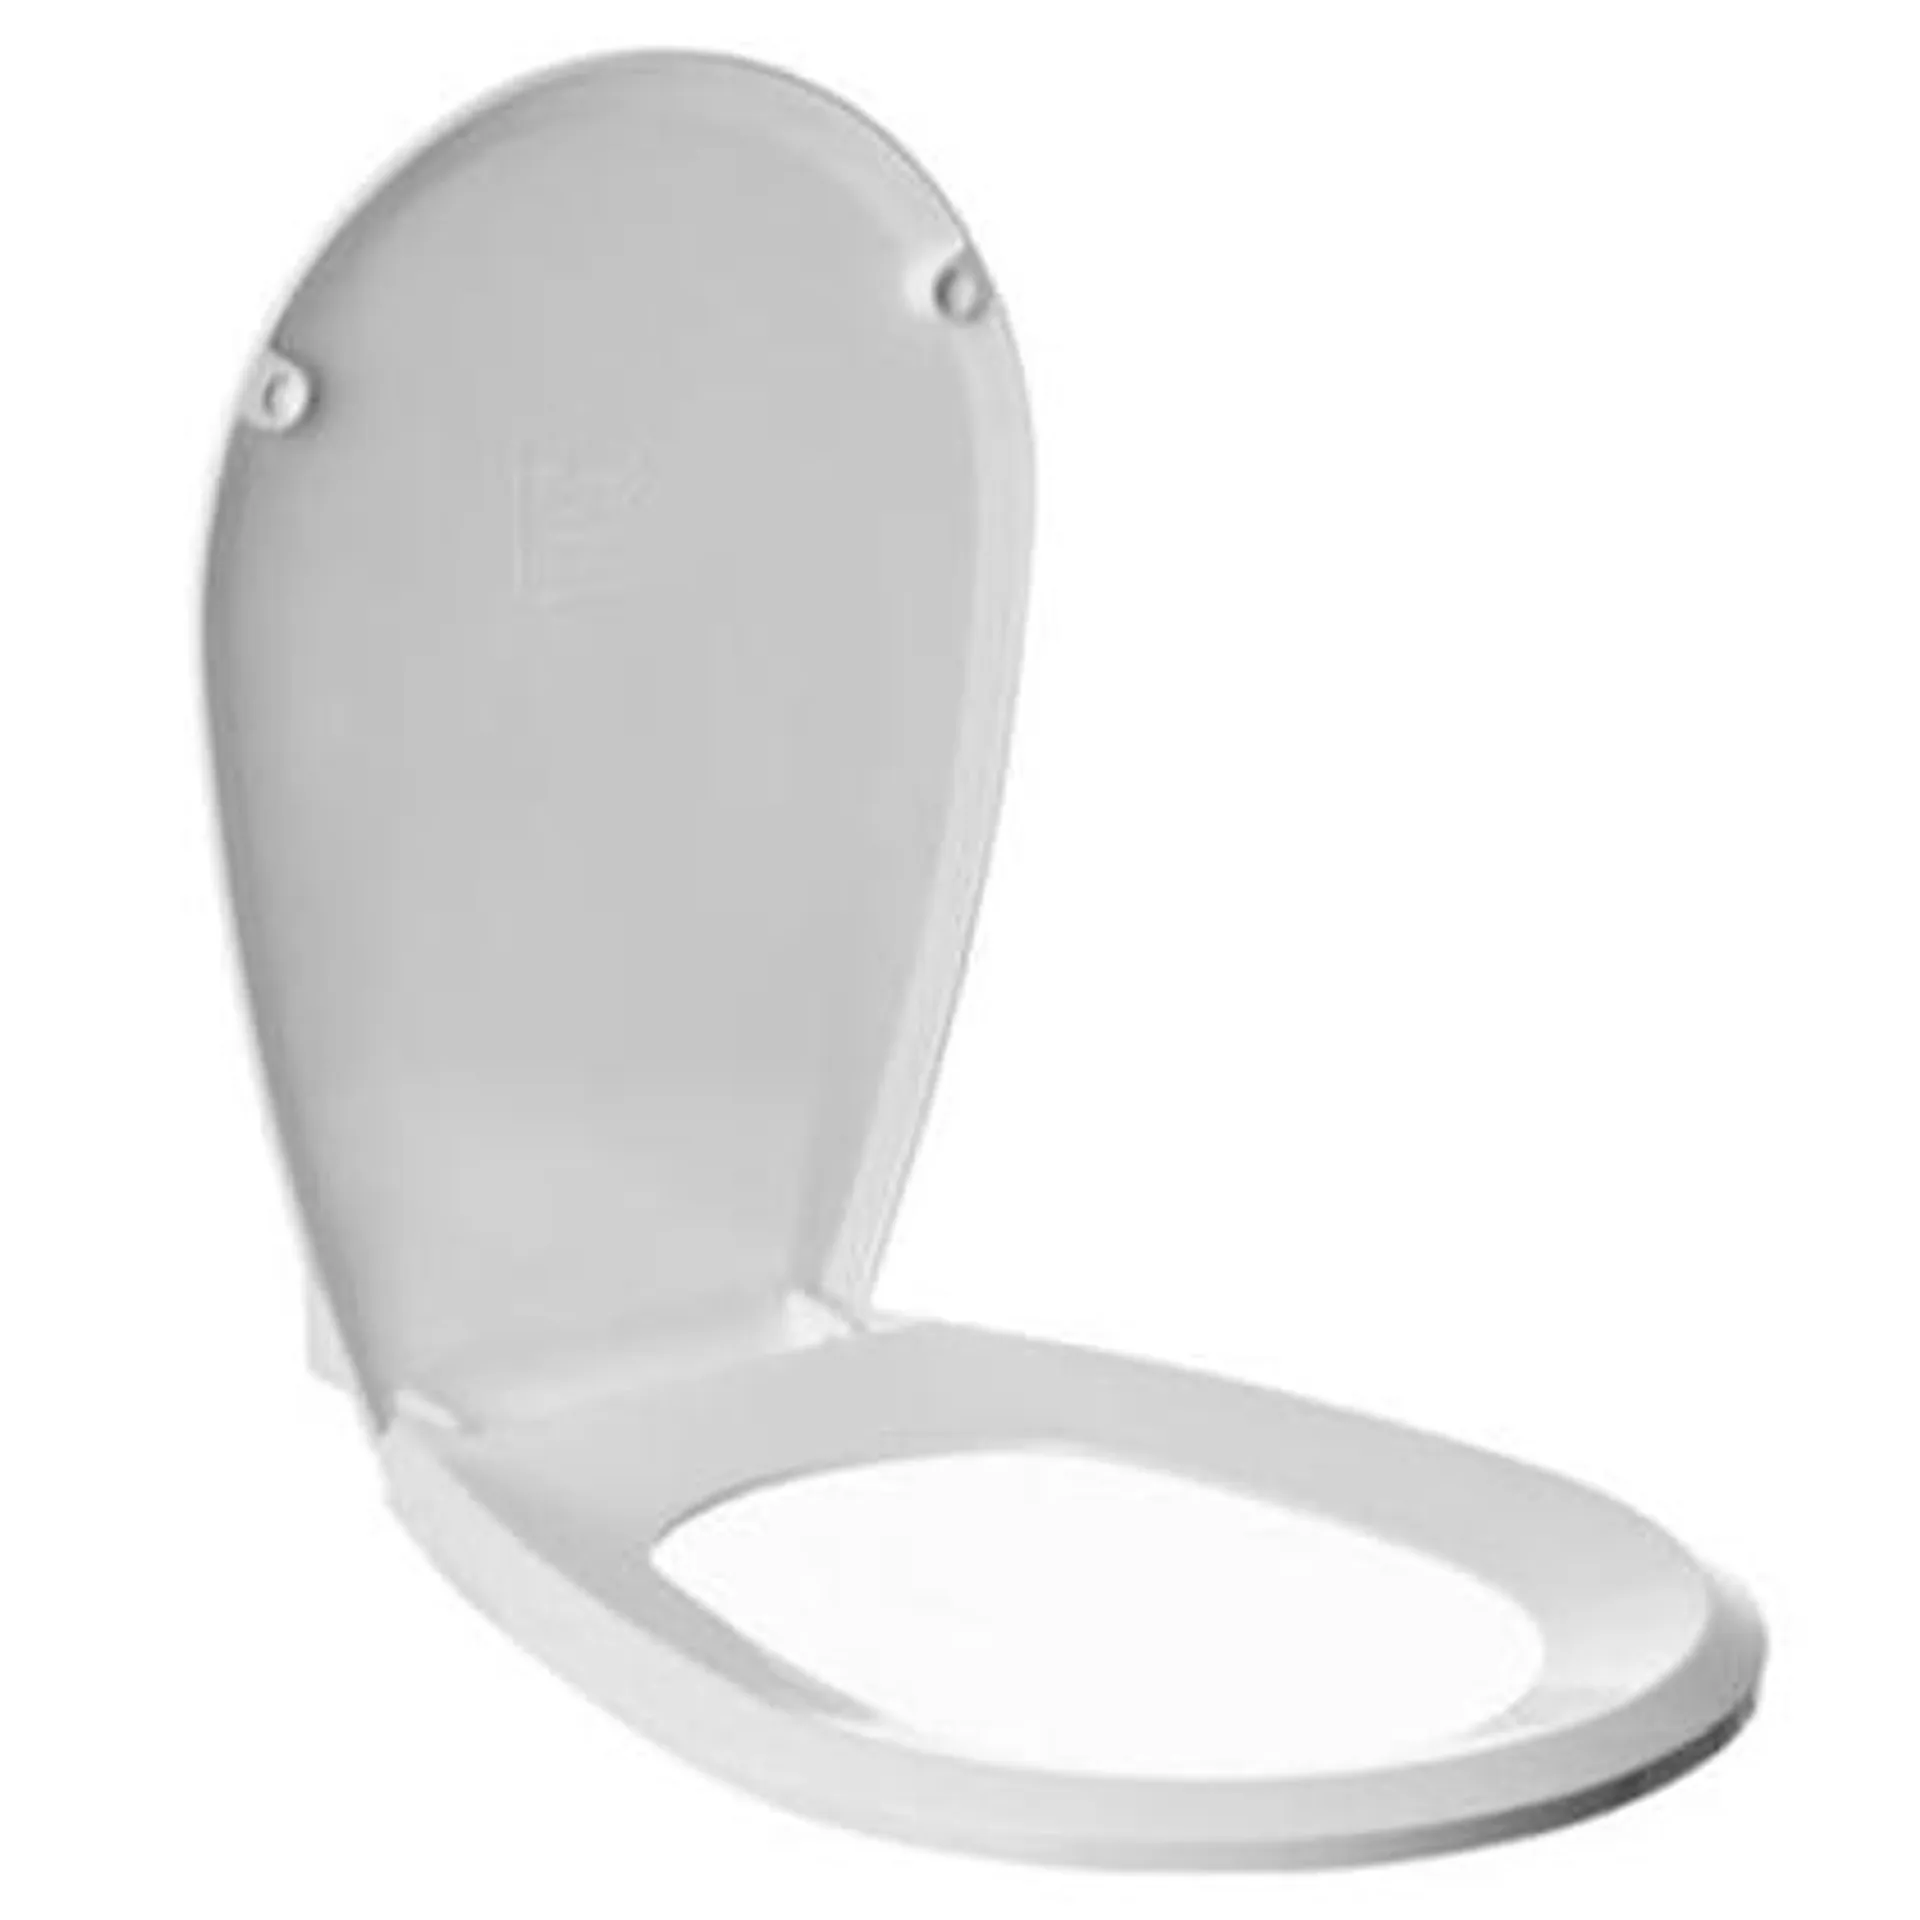 Tapa y asiento para inodoro rectangular de MDF blanco